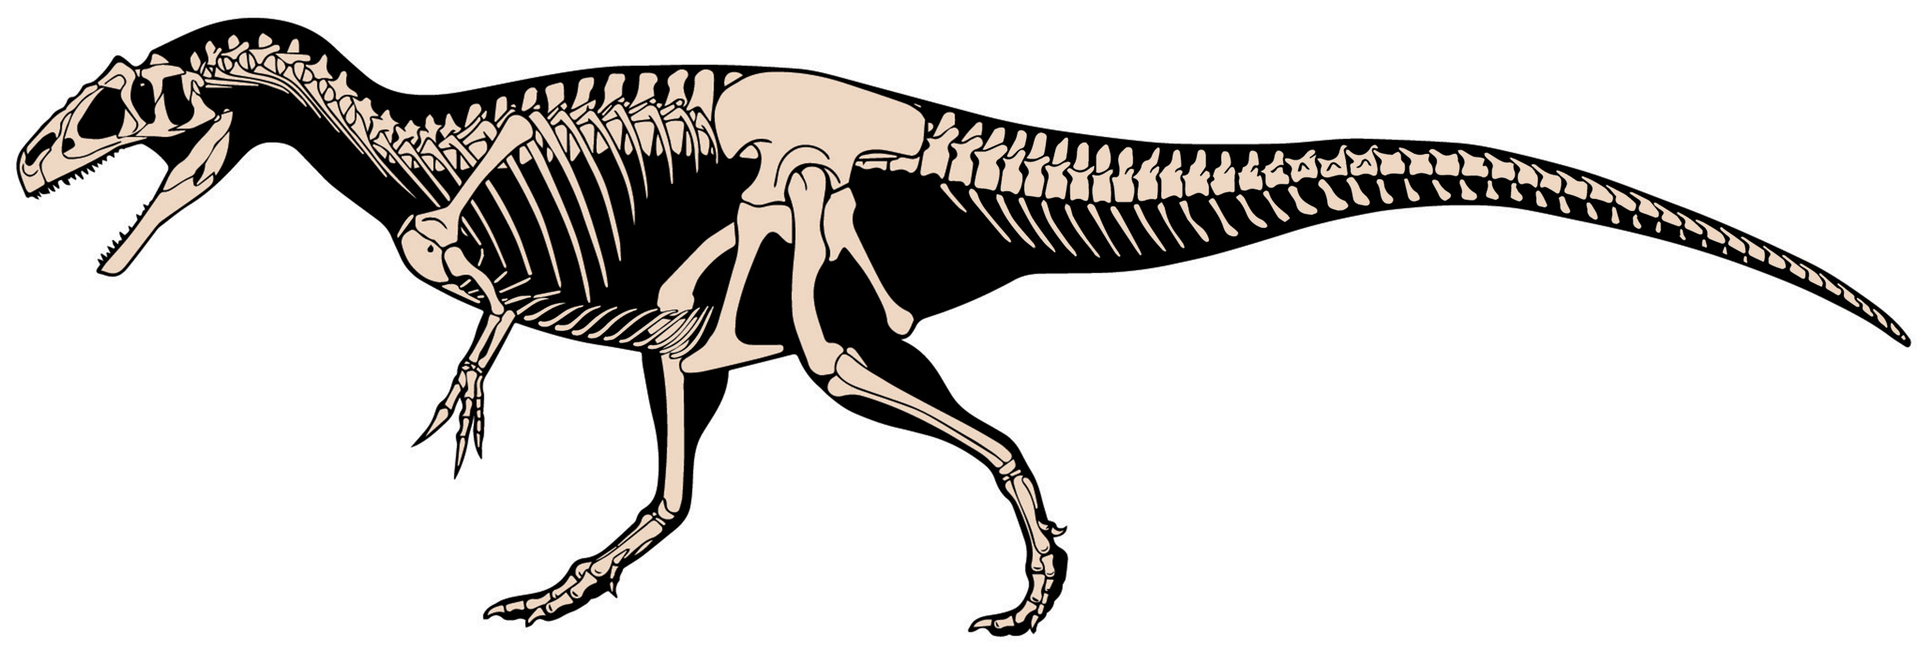 Kosterní diagram alosauridního teropoda druhu Allosaurus jimmadseni, velmi blízkého příbuzného druhu A. fragilis. Podobně asi vypadal i Epanterias amplexus, pokud se ovšem jedná o platný rod a druh. Je totiž možné, že epanterias představoval pouze od